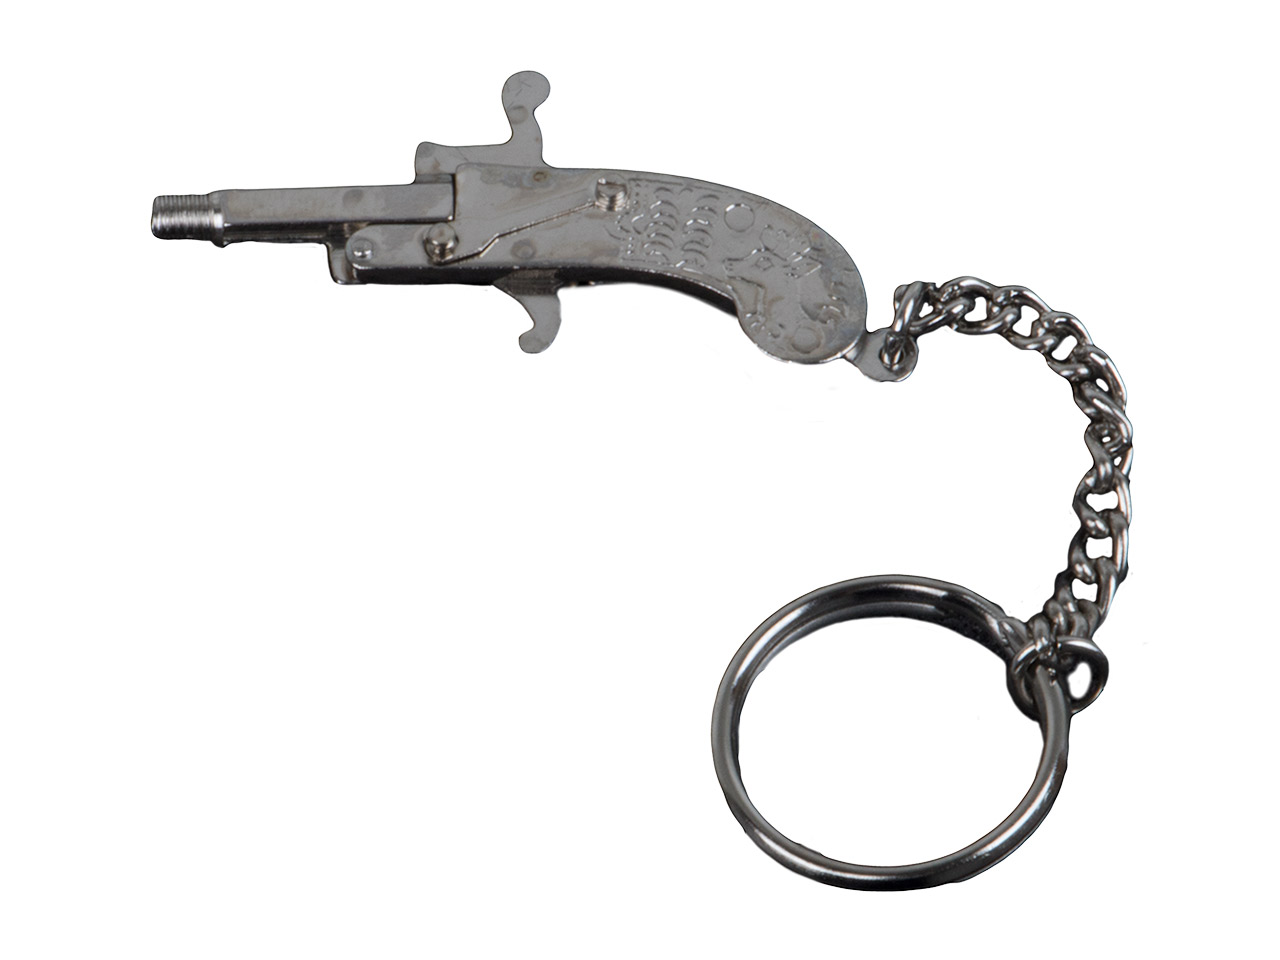 Original Berloque Mini Pistole vernickelt inklusive Knallkapseln und Leuchtsterne in silberfarbender Dose Kaliber 2 mm (P18)